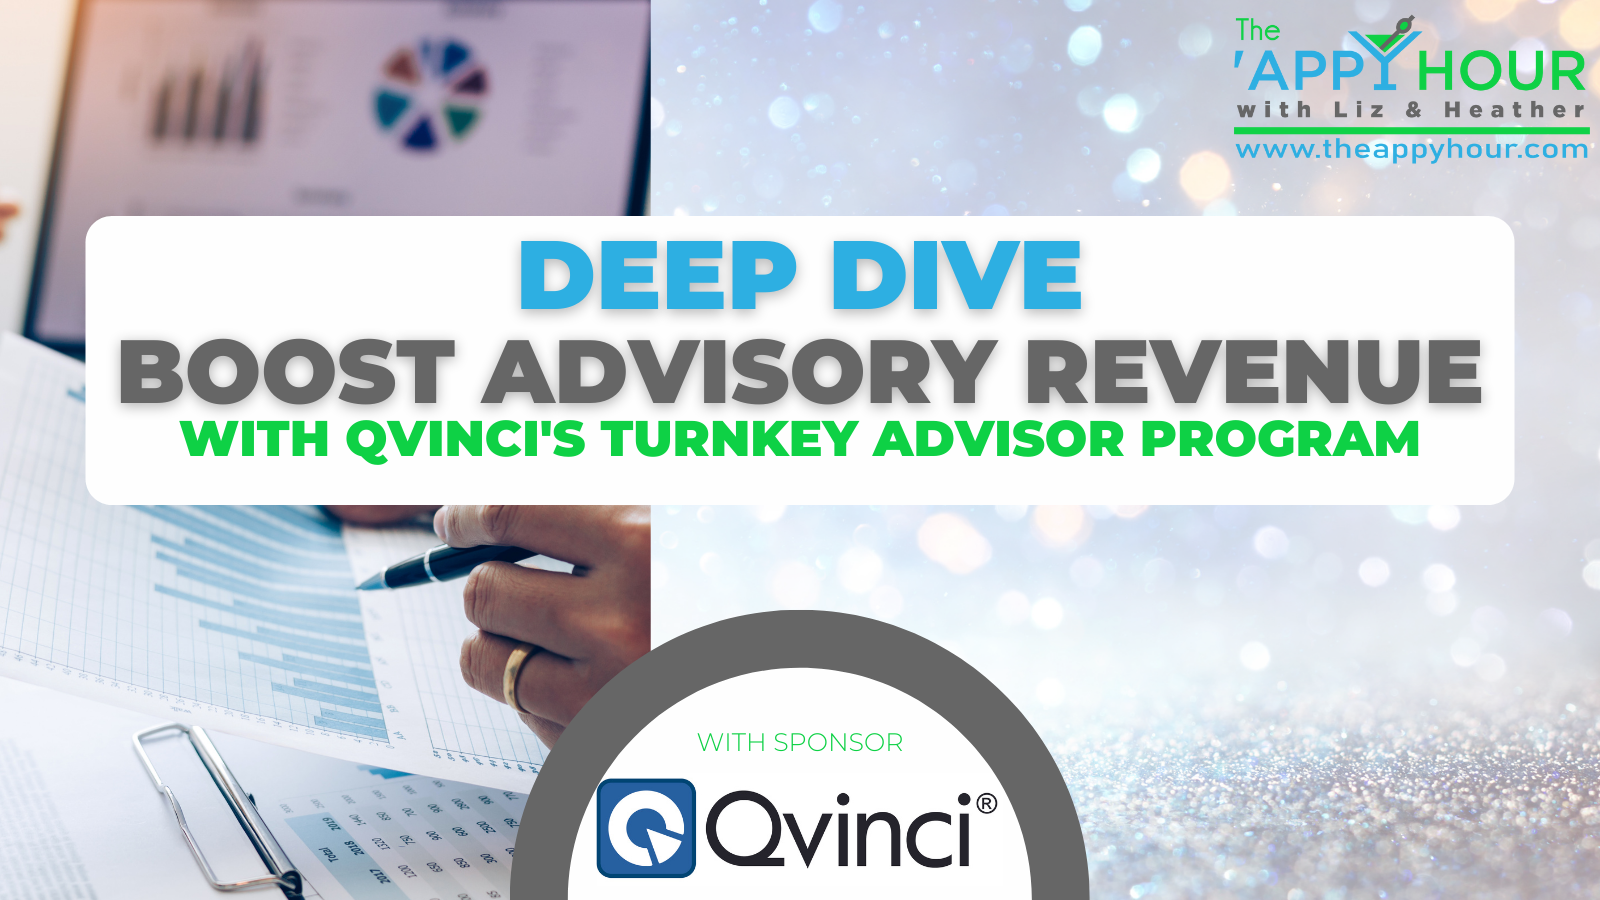 Effortlessly Deploy Qvinci’s Turnkey Advisor Program